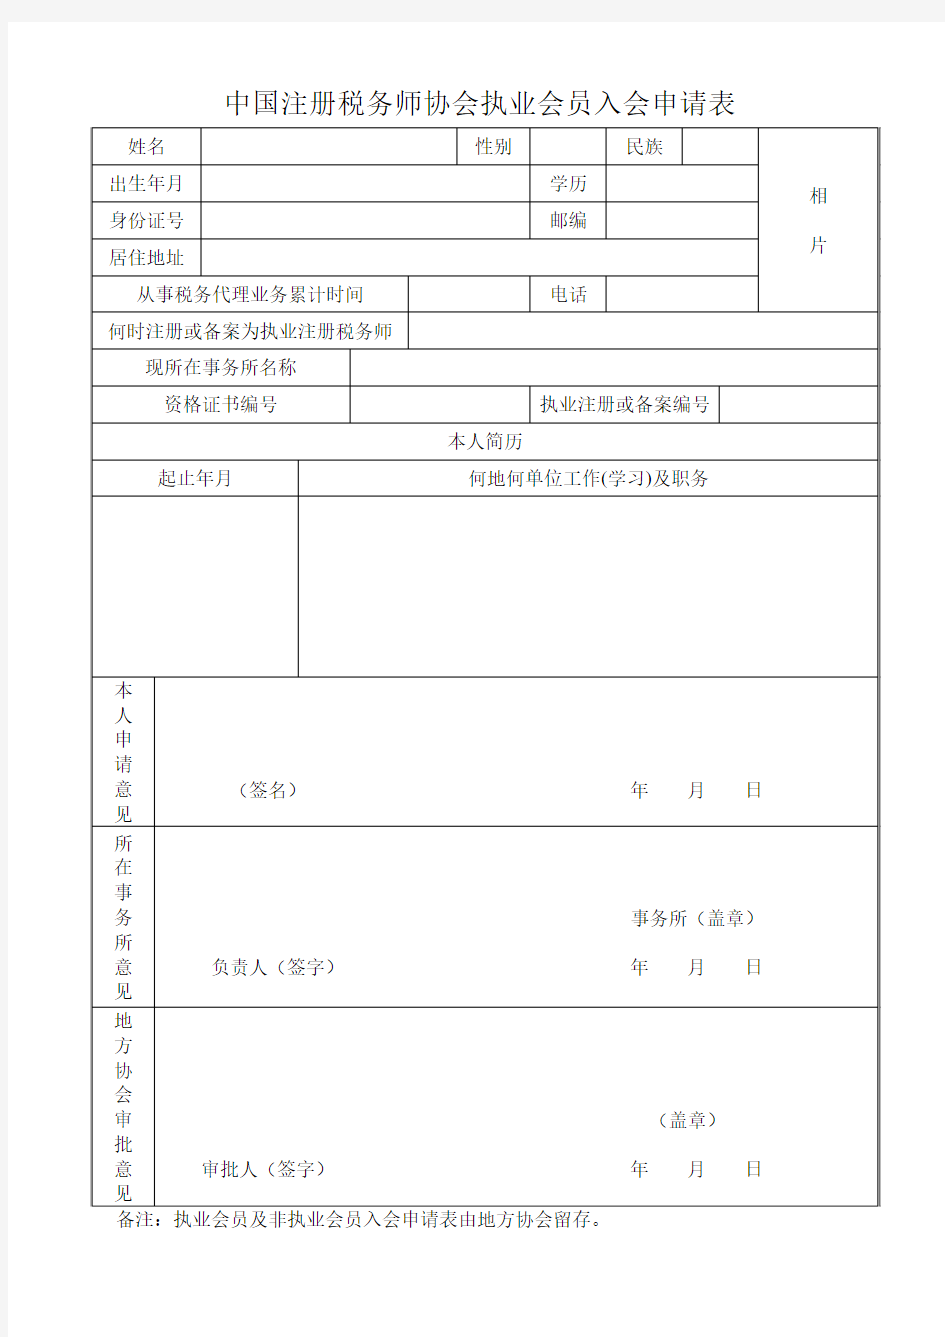 中国注册税务师协会执业会员入会申请表